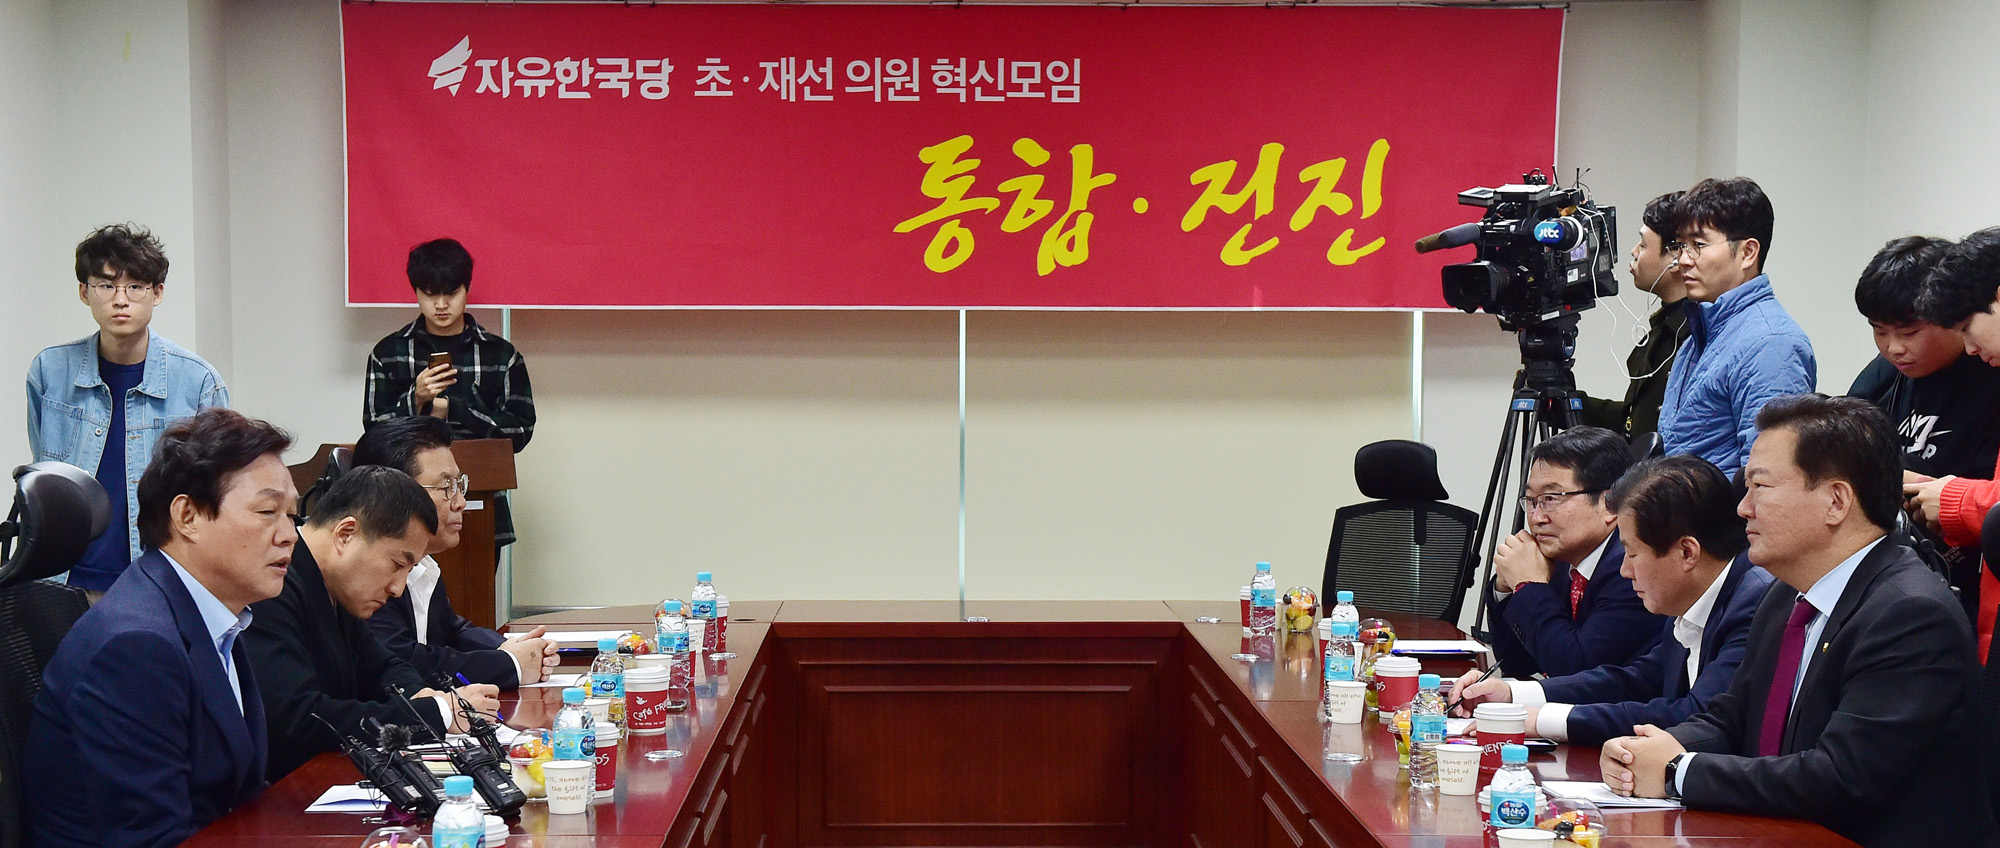 자유한국당초선의원;초선의원;한국당혁신모임;통합전진회의